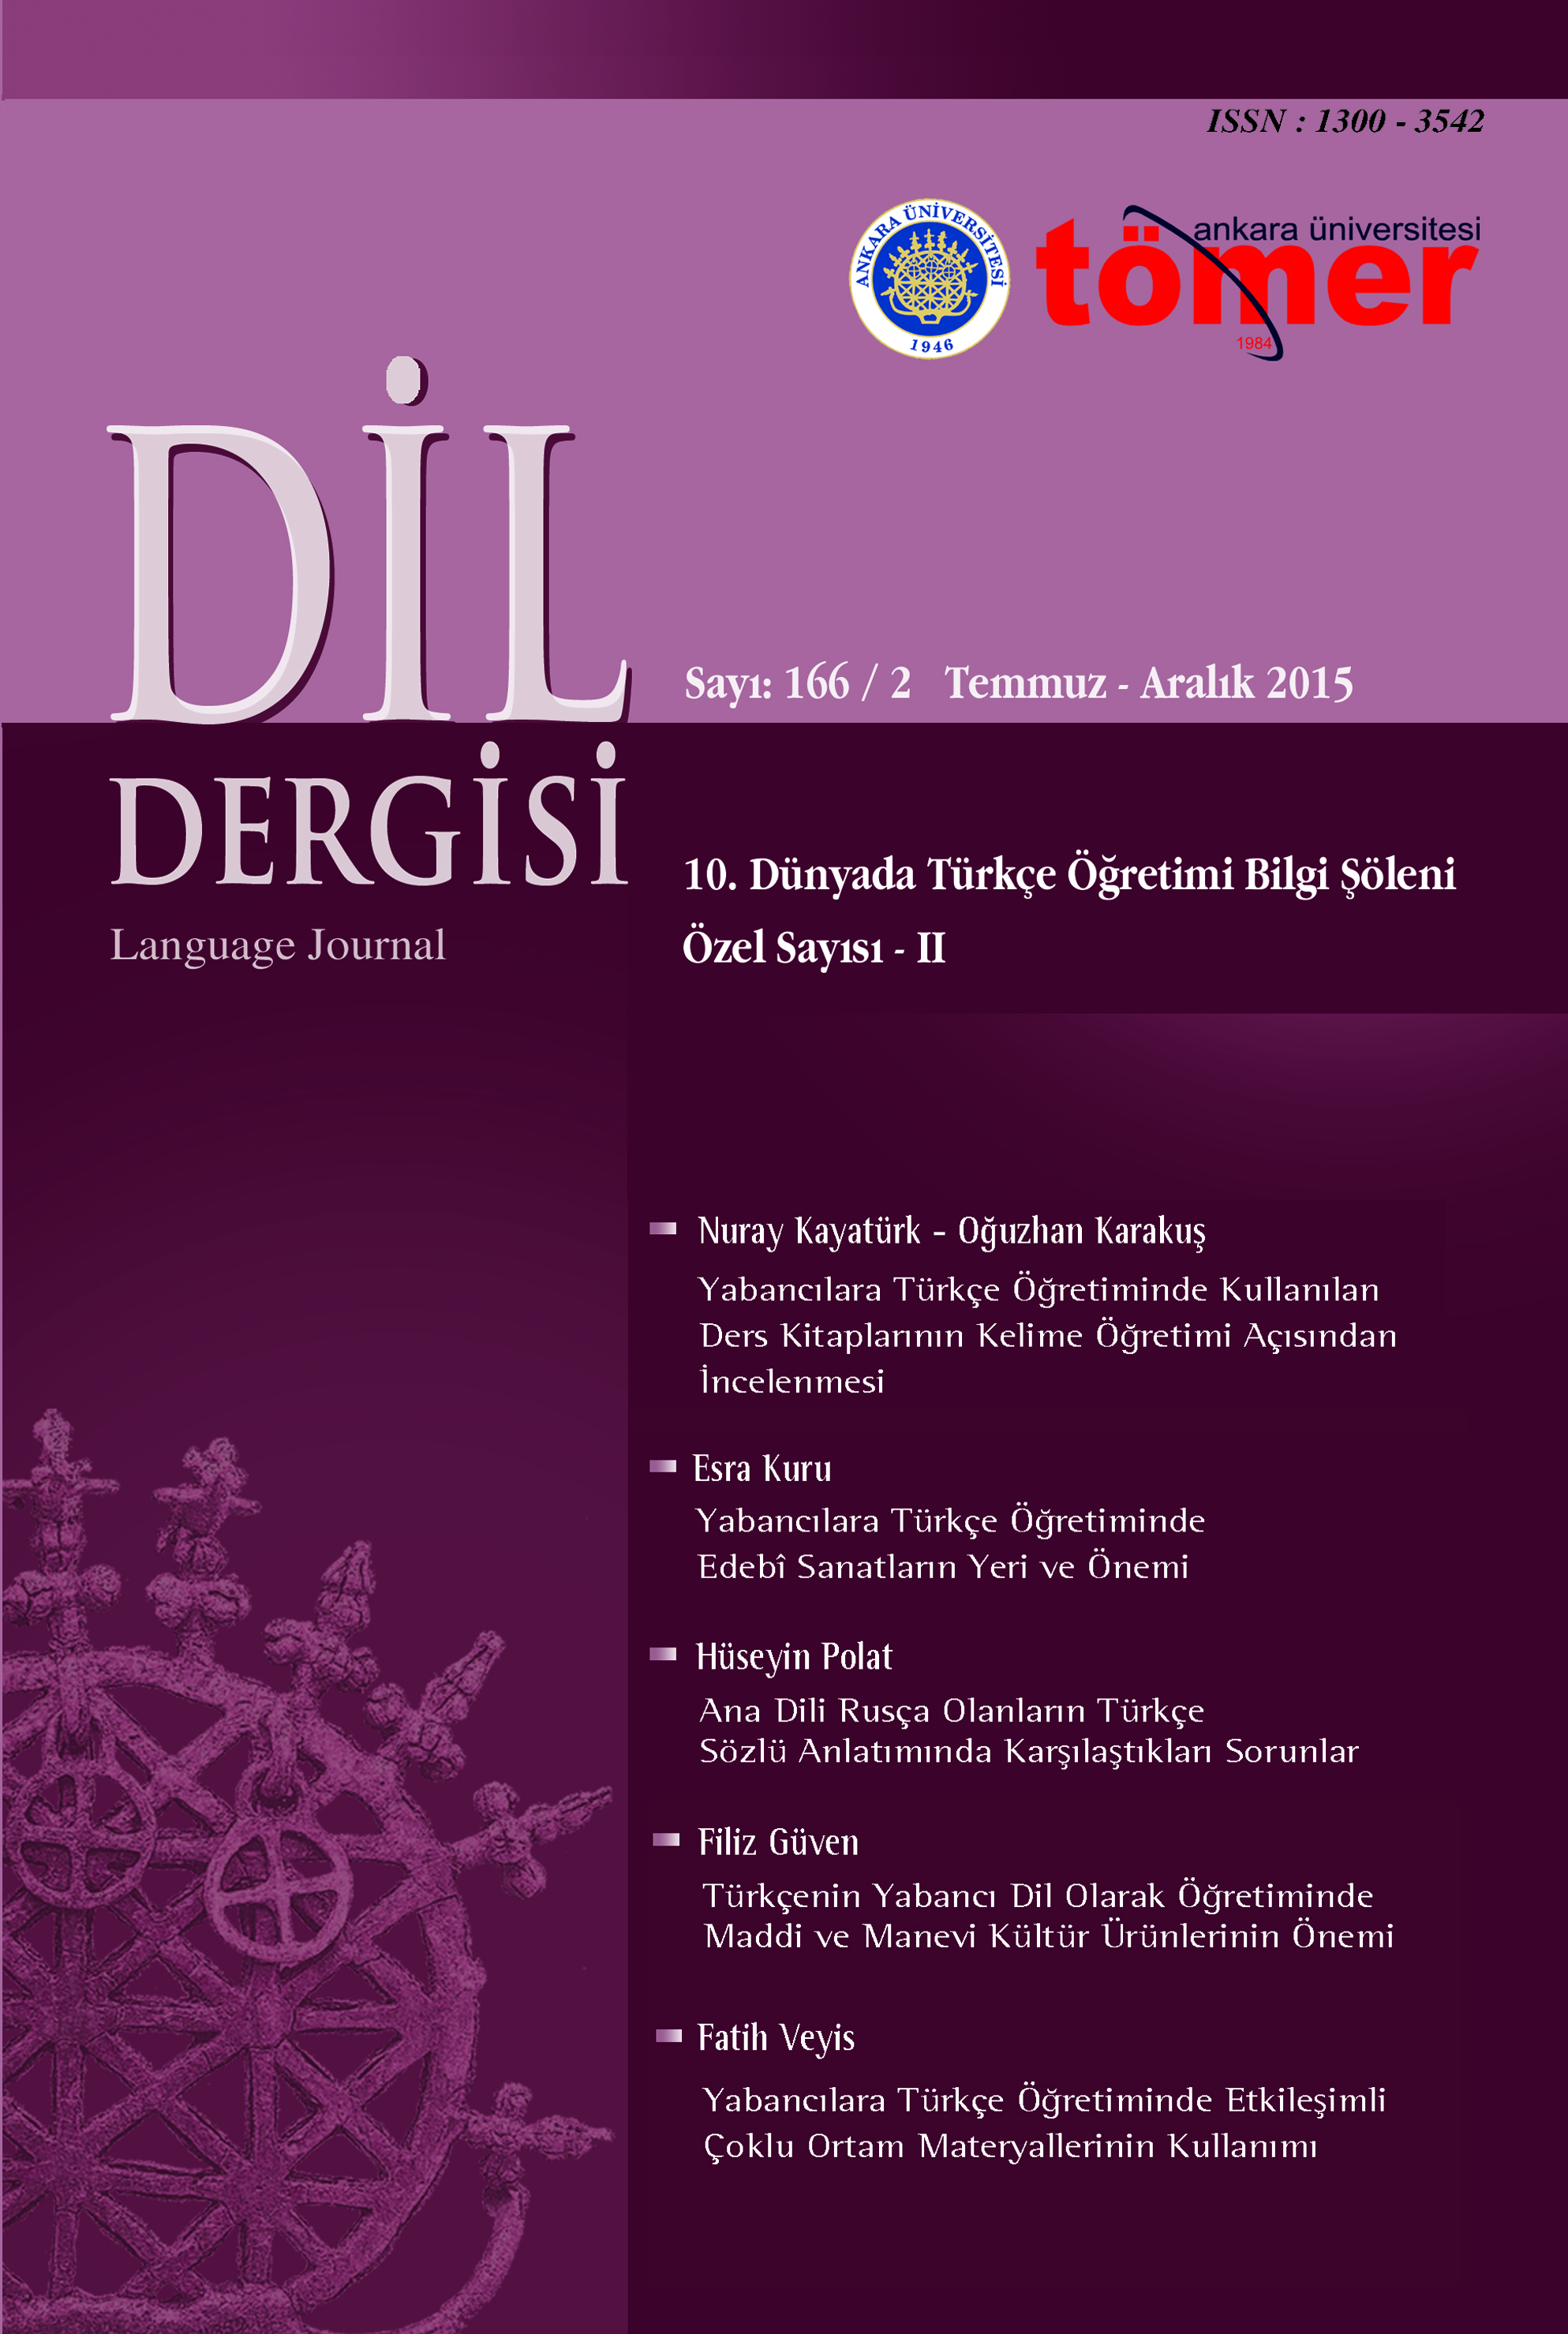 Yabancılara Türkçe Öğretiminde Etkileşimli Çoklu Ortam Materyallerinin Kullanımı